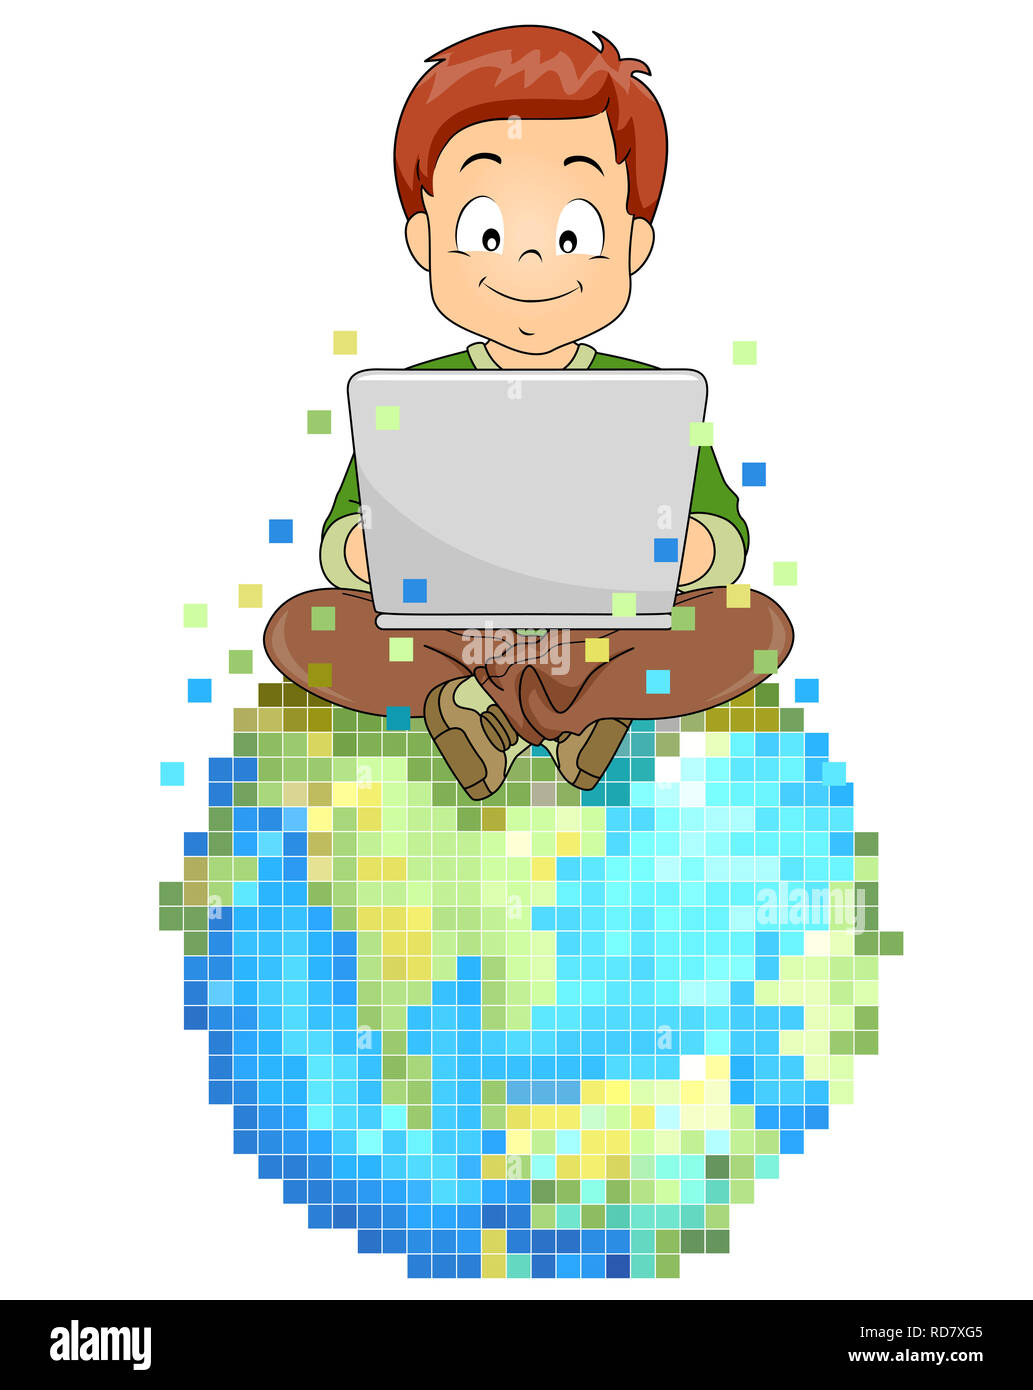 Abbildung: ein Kind Junge mit Laptop Auf der Pixel- oder digitale virtuelle Welt Stockfoto